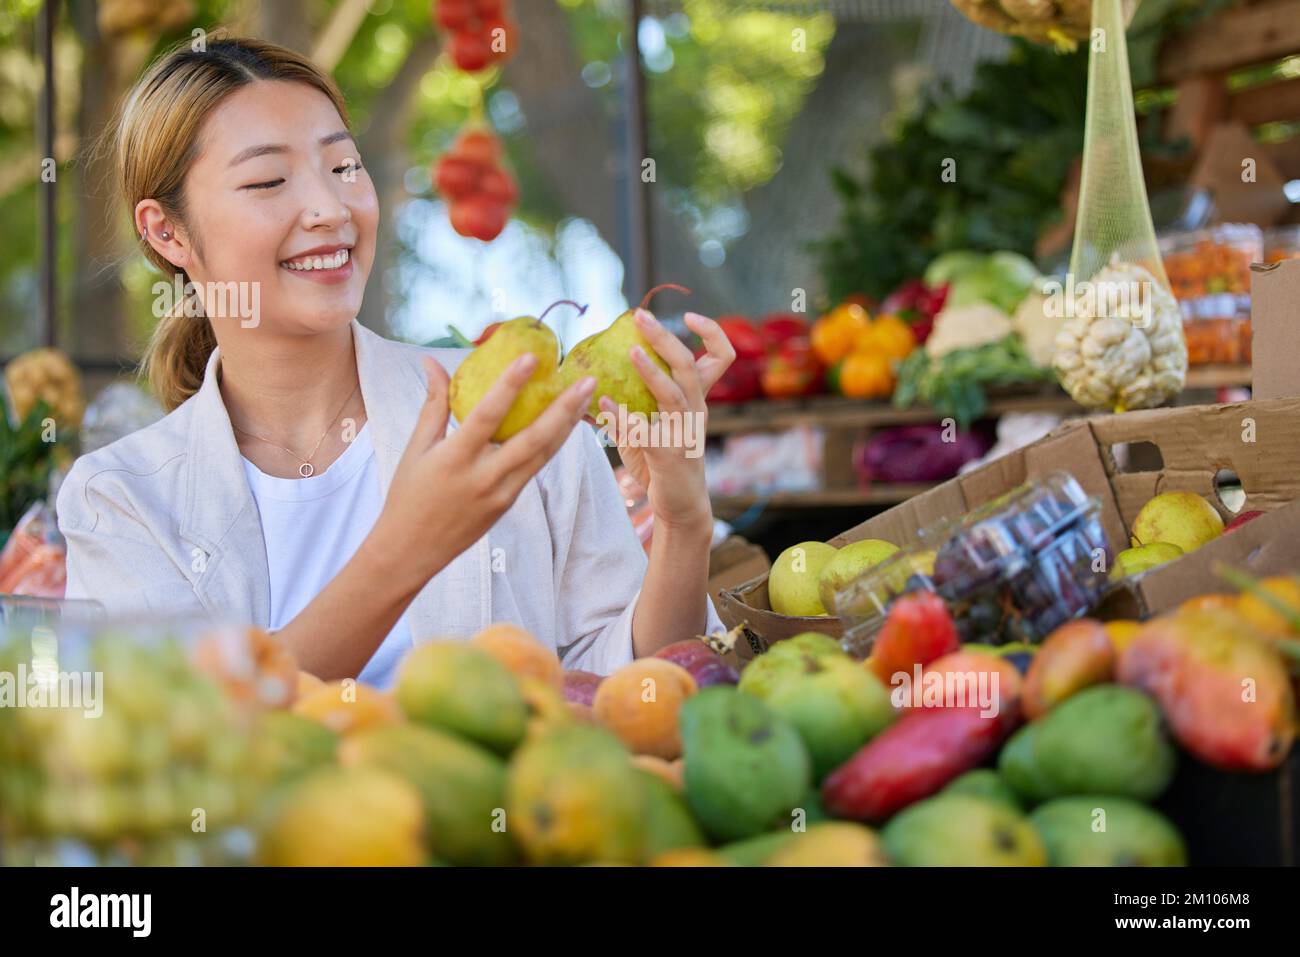 Frau, Obst- und Lebensmitteleinkäufe auf dem Markt im Freien, Birnenauswahl und Gesundheitsprodukt mit Lebensmitteln und Ernährung auf Seoul Markt. Ein Laden, ein glücklicher Asiate Stockfoto